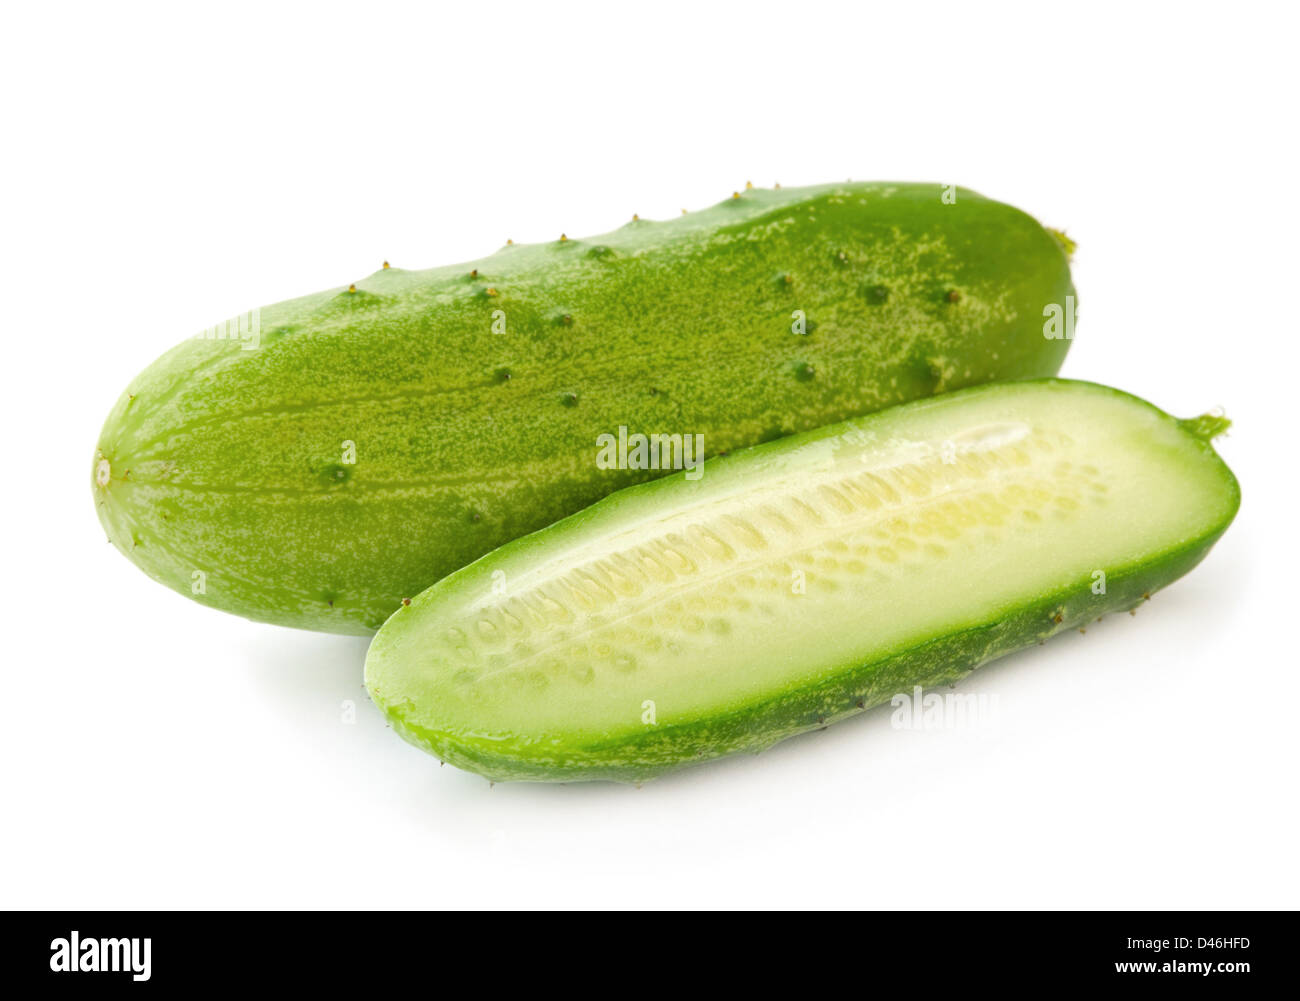 Cucumber isolated on white background Stock Photo